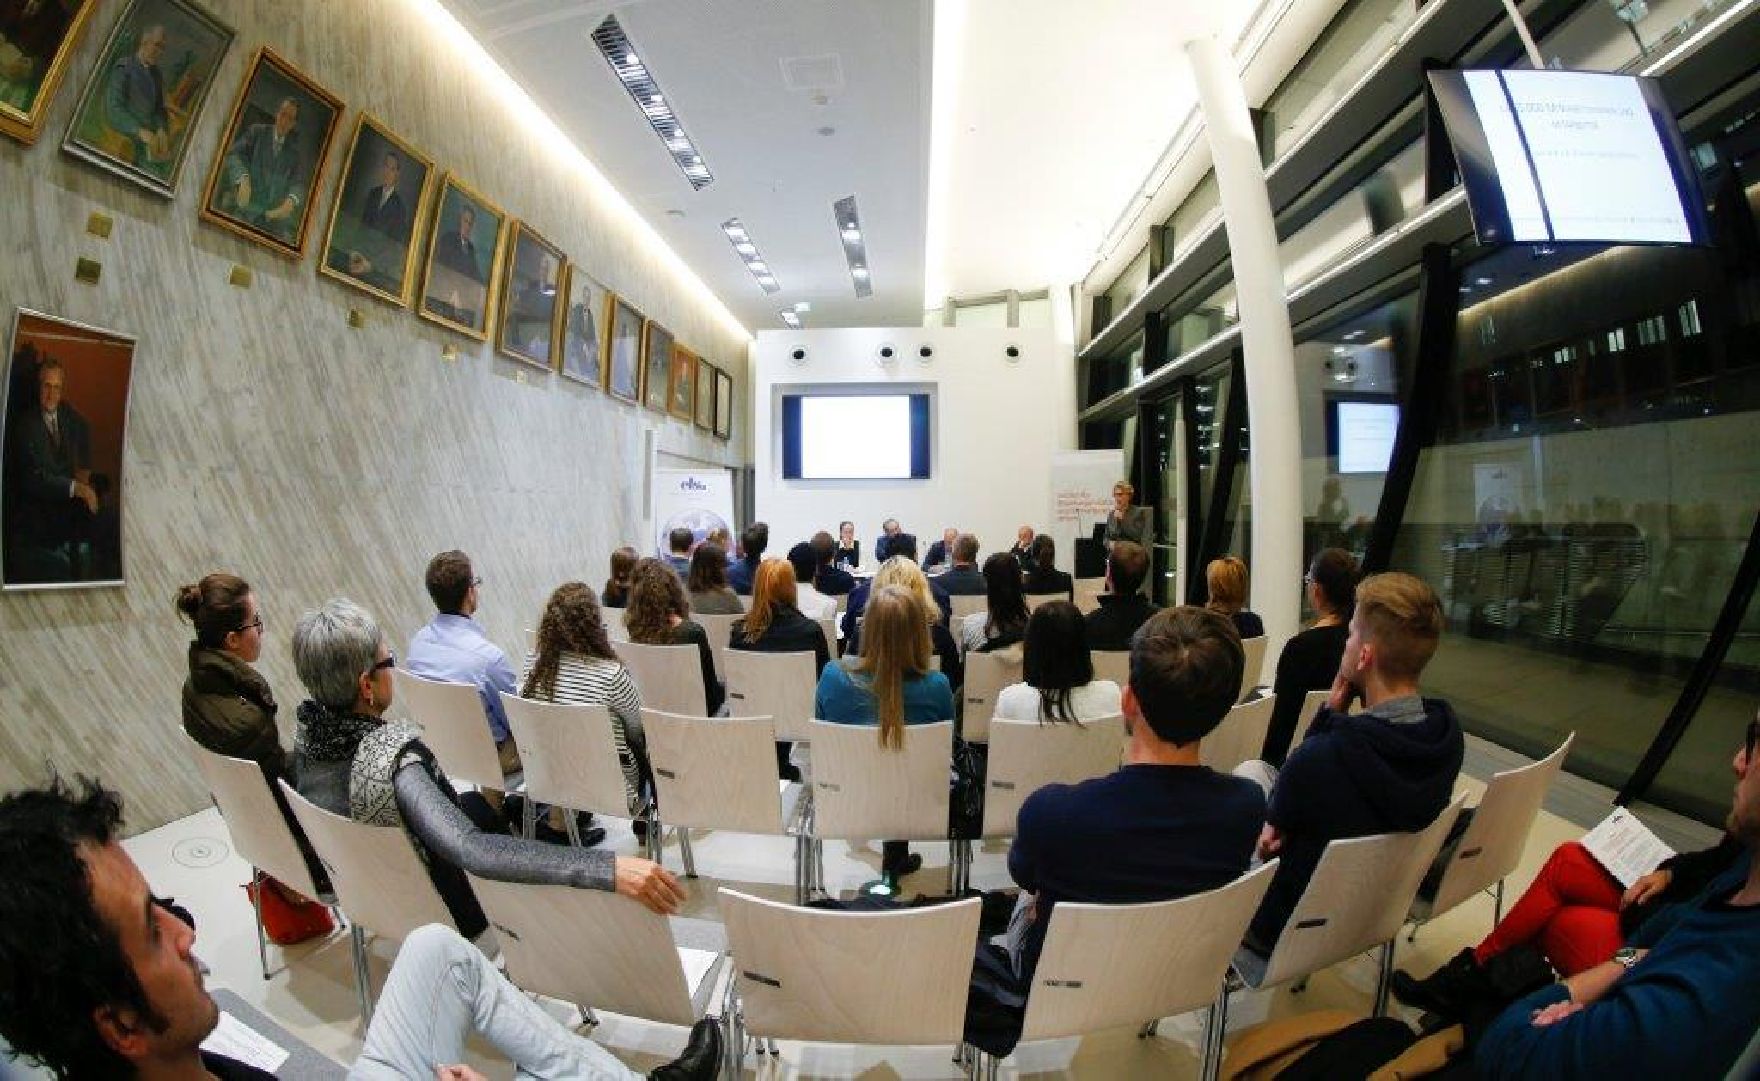 Am 13. Oktober 2015 fand auf der Wirtschaftsuniversität Wien, in Kooperation mit ELSA-WU, eine Veranstaltung zum Thema "Die Verwaltung als Arbeitgeber" statt. Blick aus dem Publikum.